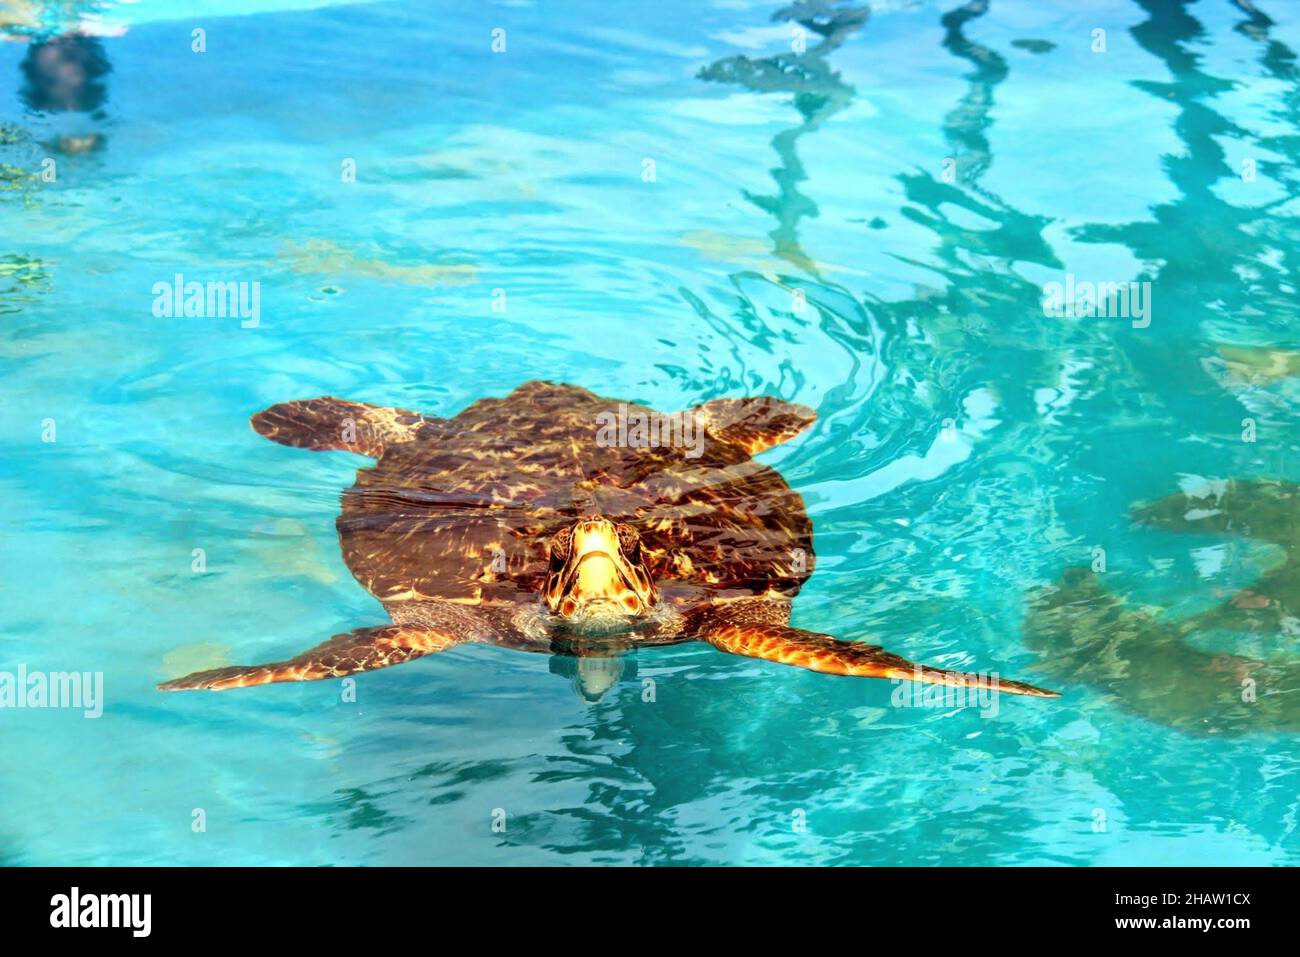 Eine Schildkröte, die in einem Artenschutzprojekt aus der Nähe schwimmt. Praia do Forte - Bahia - Brasilien. Stockfoto